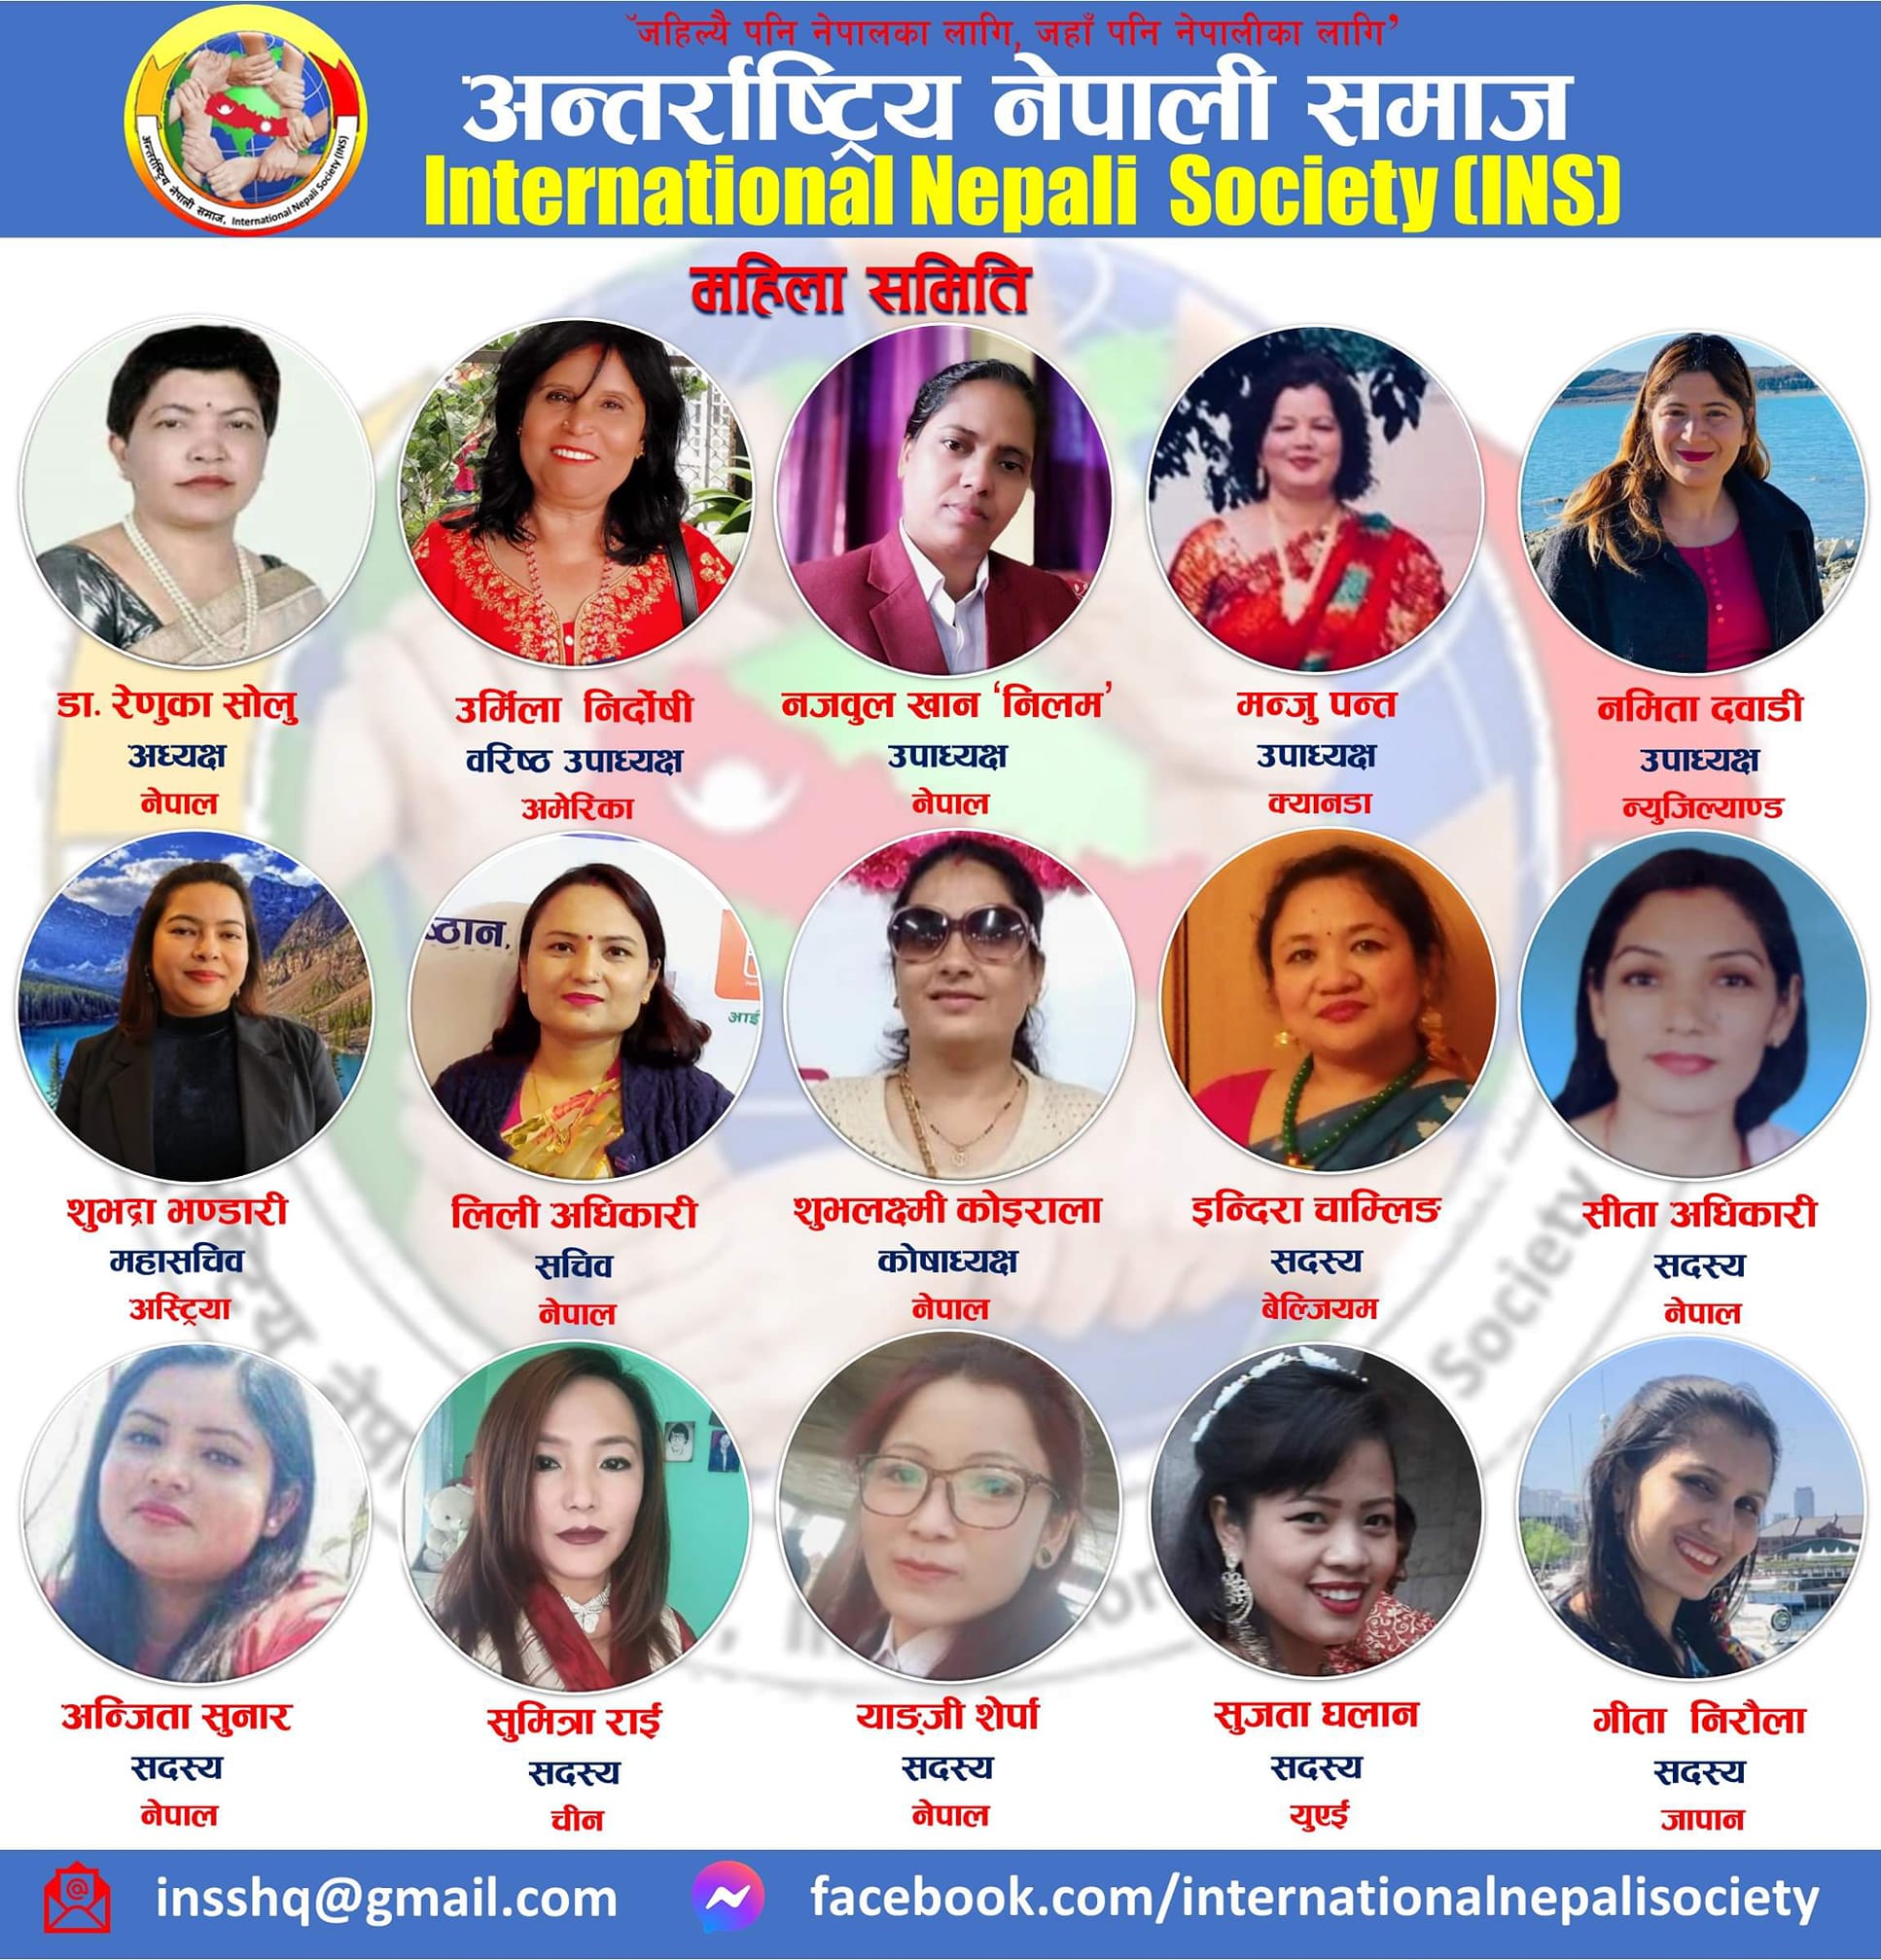 डा. रेणुका सोलुको नेतृत्वमा बन्यो अन्तर्राष्ट्रिय नेपाली समाज महिला समिति